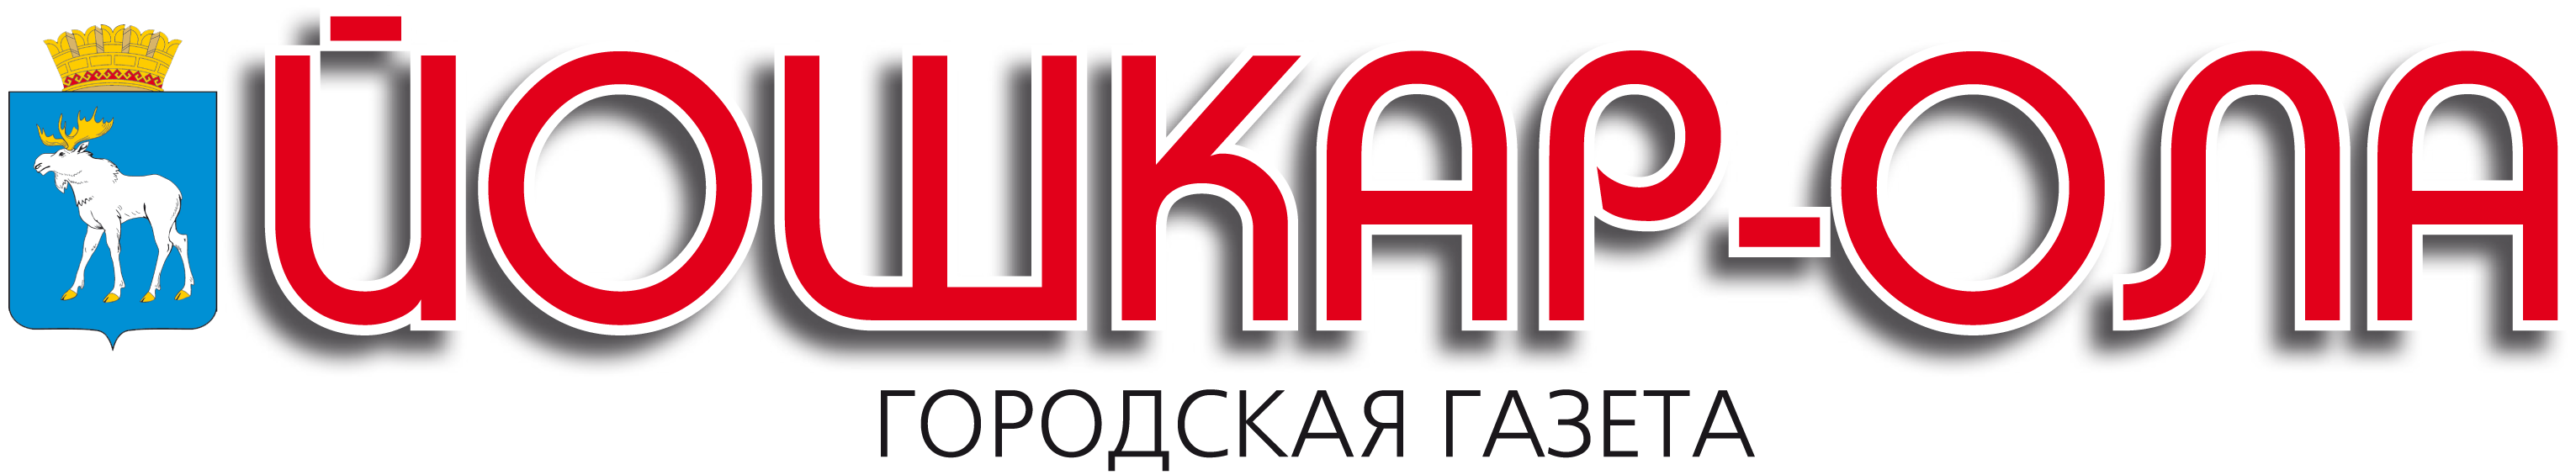 городская газета «Йошкар-Ола», логотип